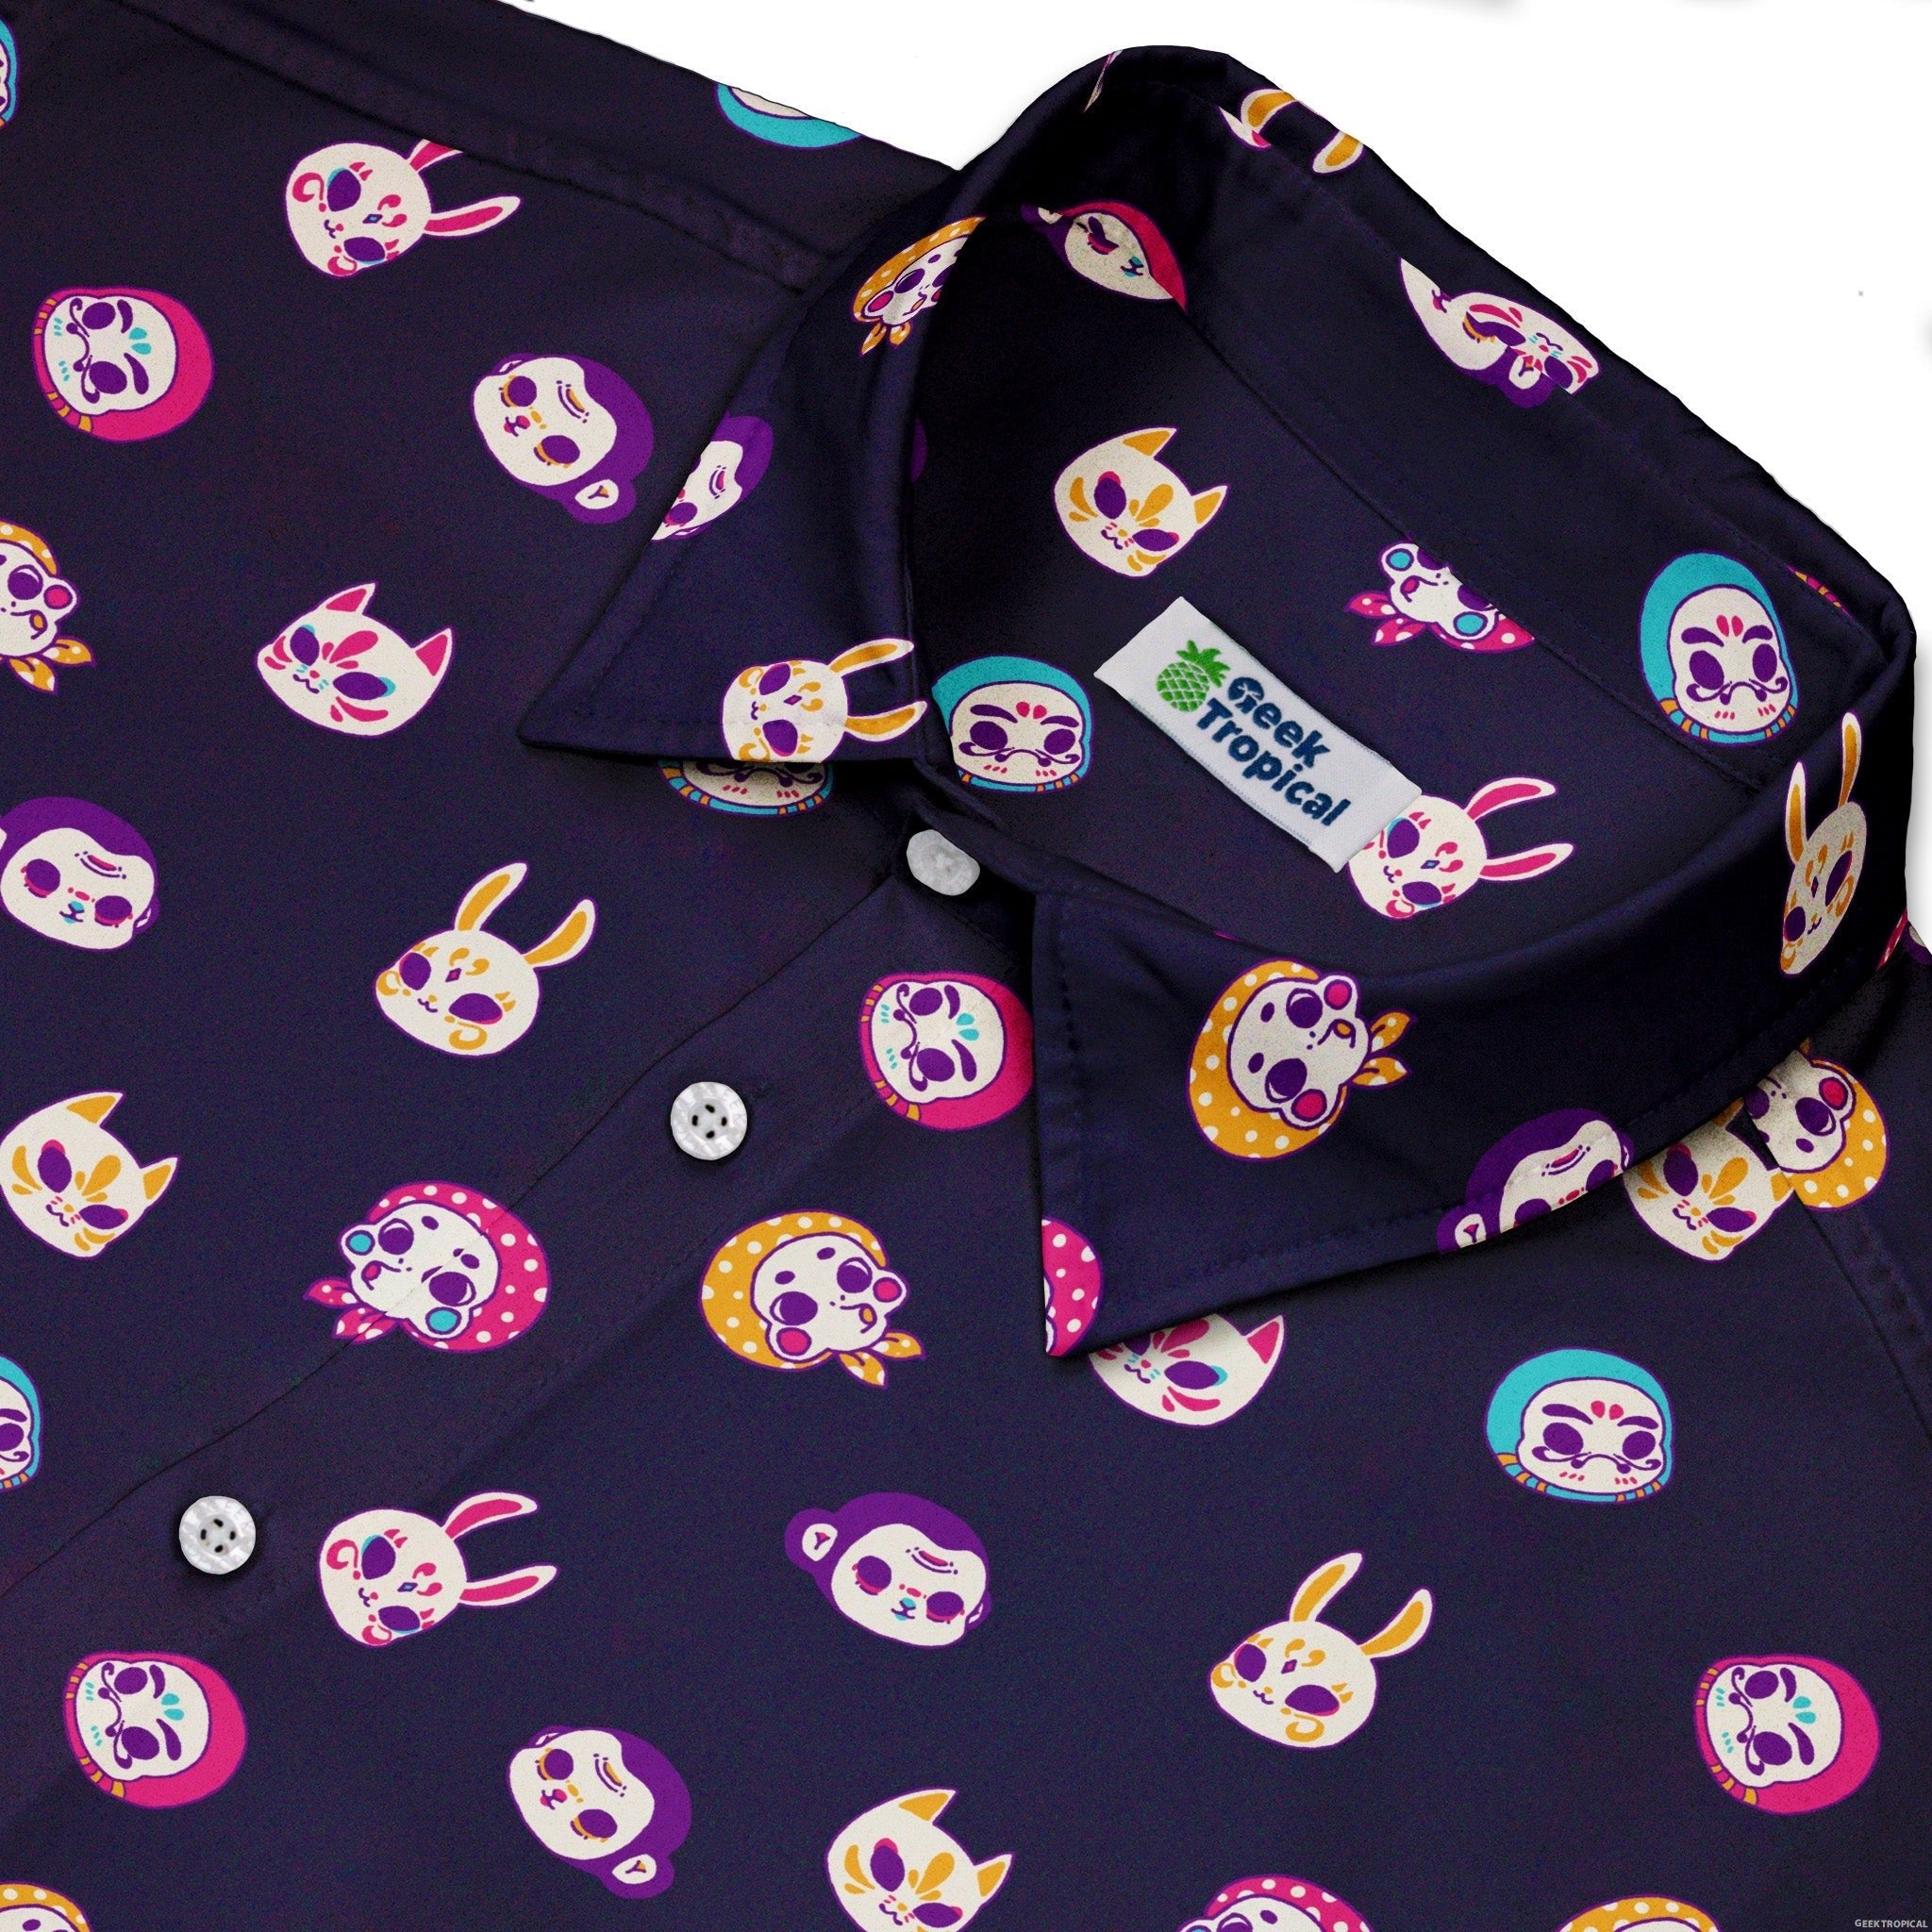 Kawaii Masks Parade Night Button Up Shirt - adult sizing - Anime - Design by Ardi Tong